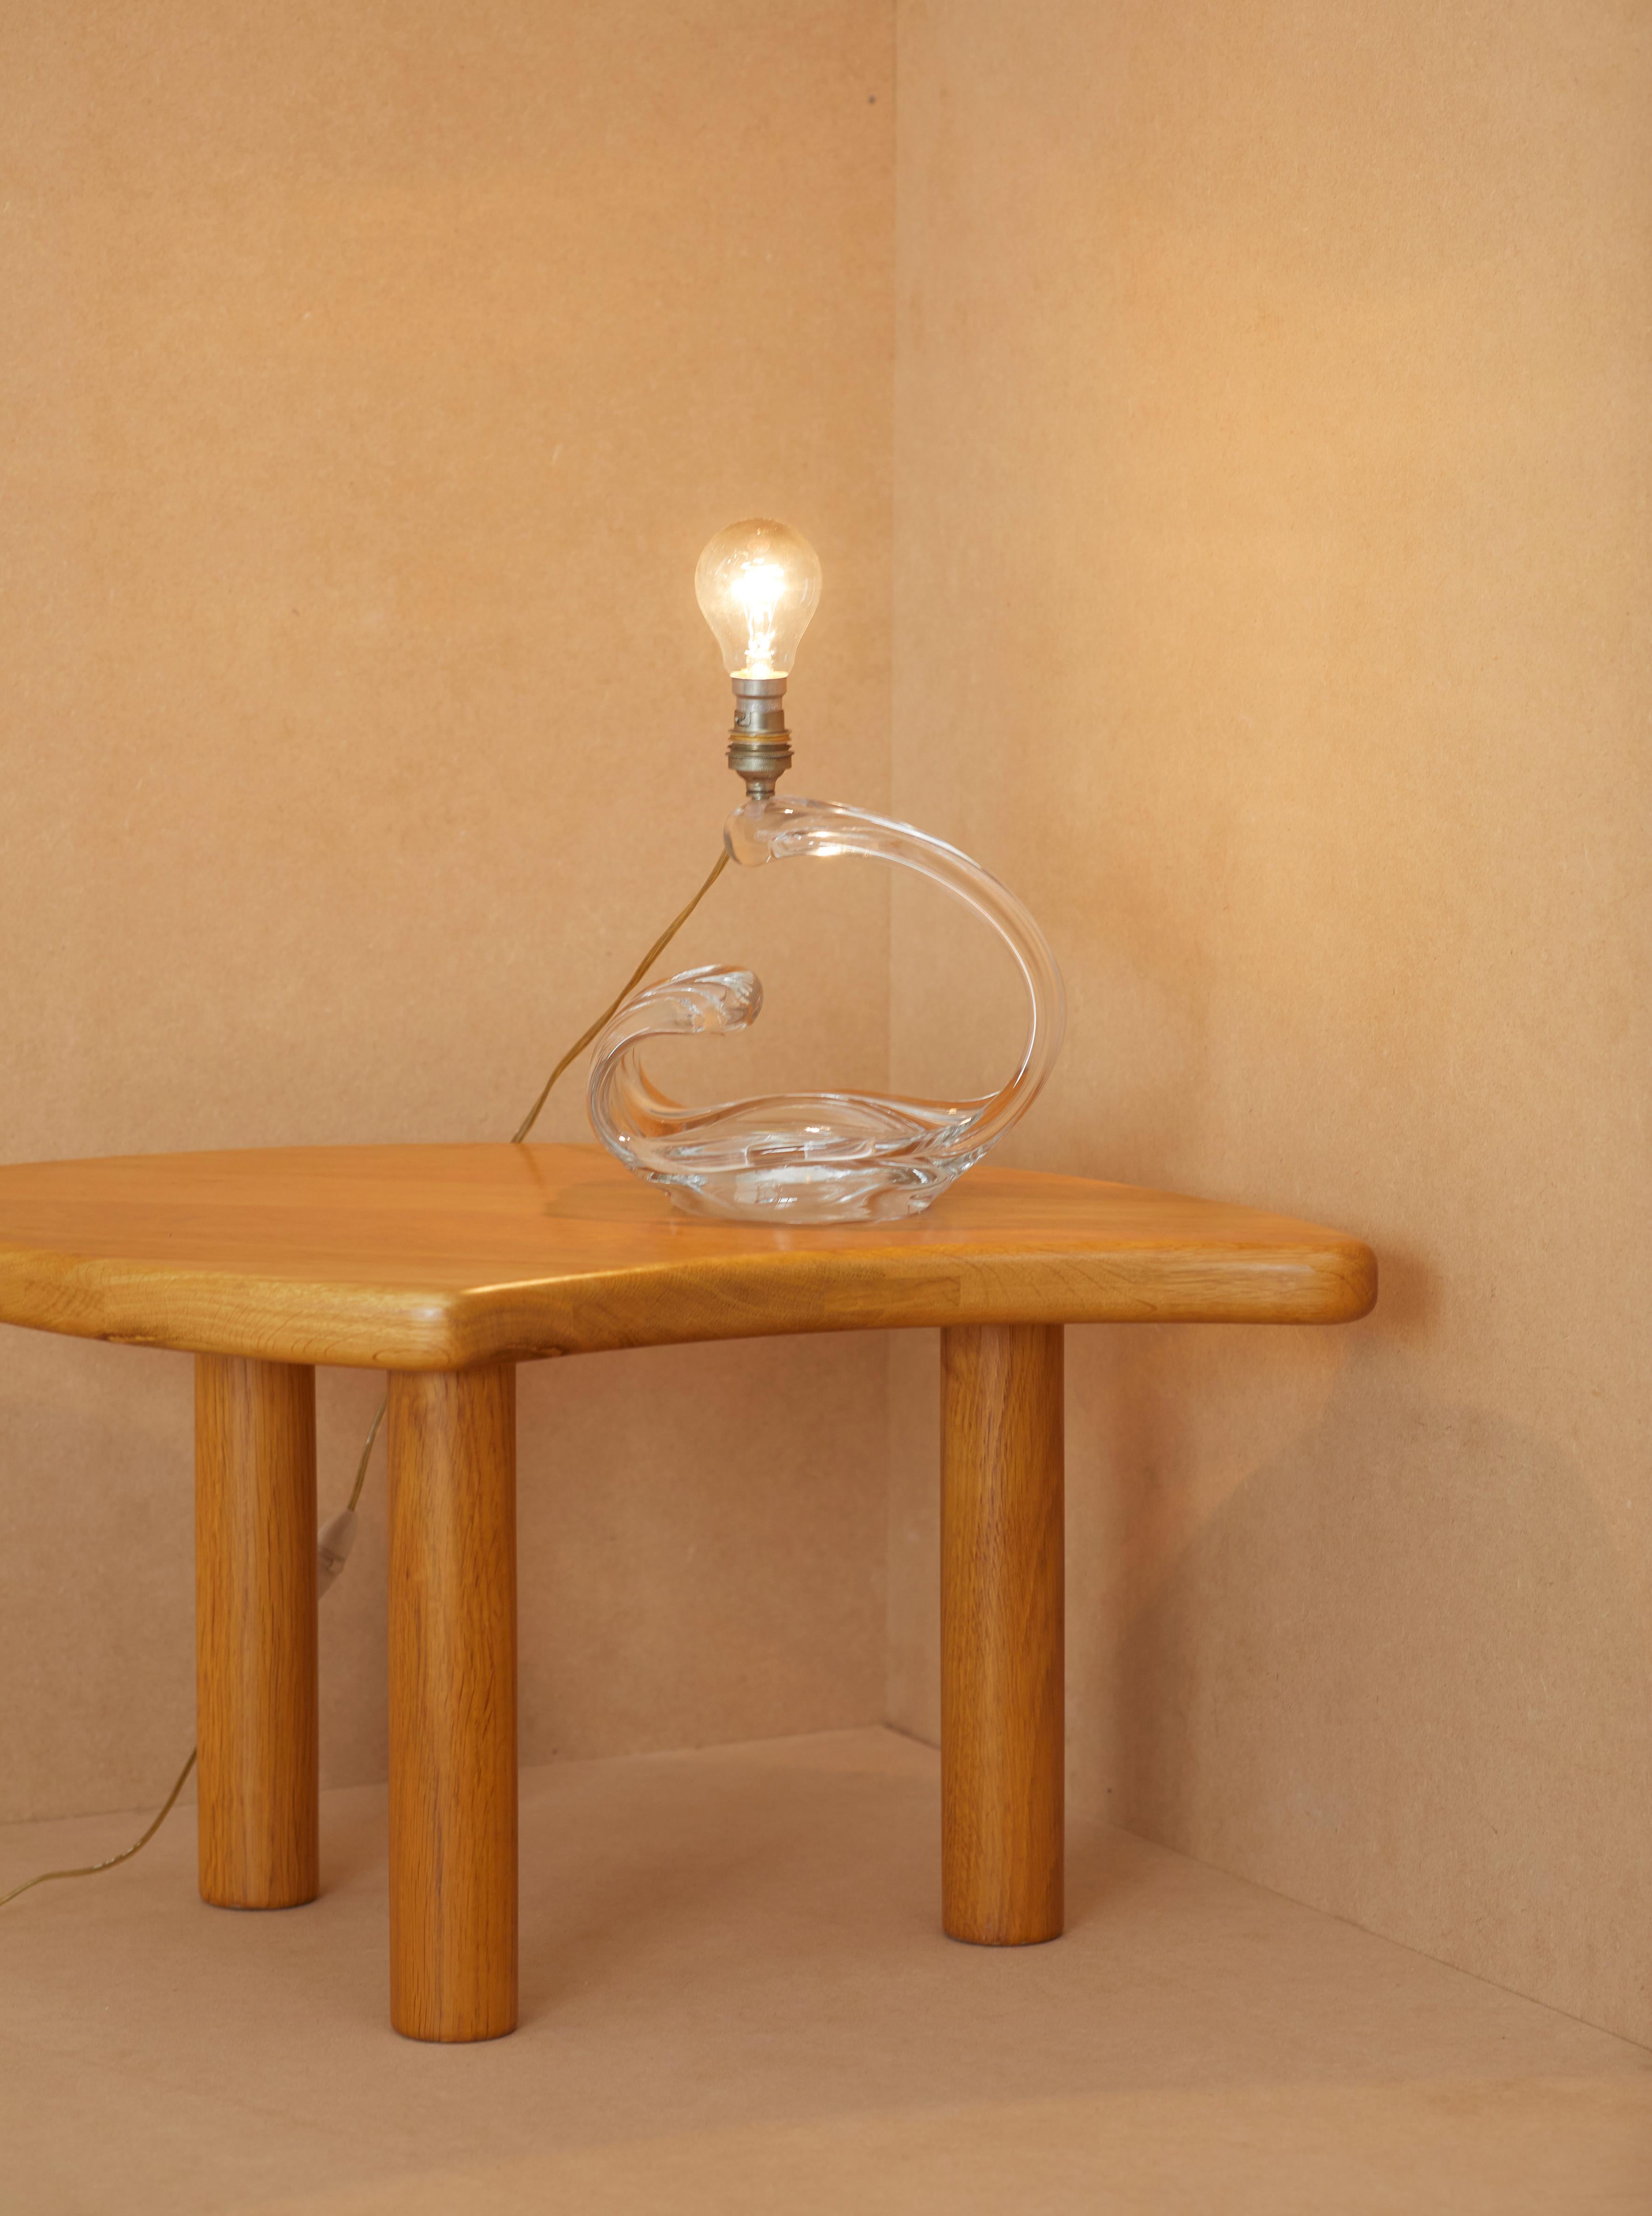 Tischlampe aus transluzentem Kristall von Maison Daum, Frankreich um 1960. 

Seit 1878 pflegt Daum, der legendäre Glasmachermeister, seit mehr als einem Jahrhundert eine Liebesbeziehung zu den größten Künstlern seiner Zeit und schenkt deren